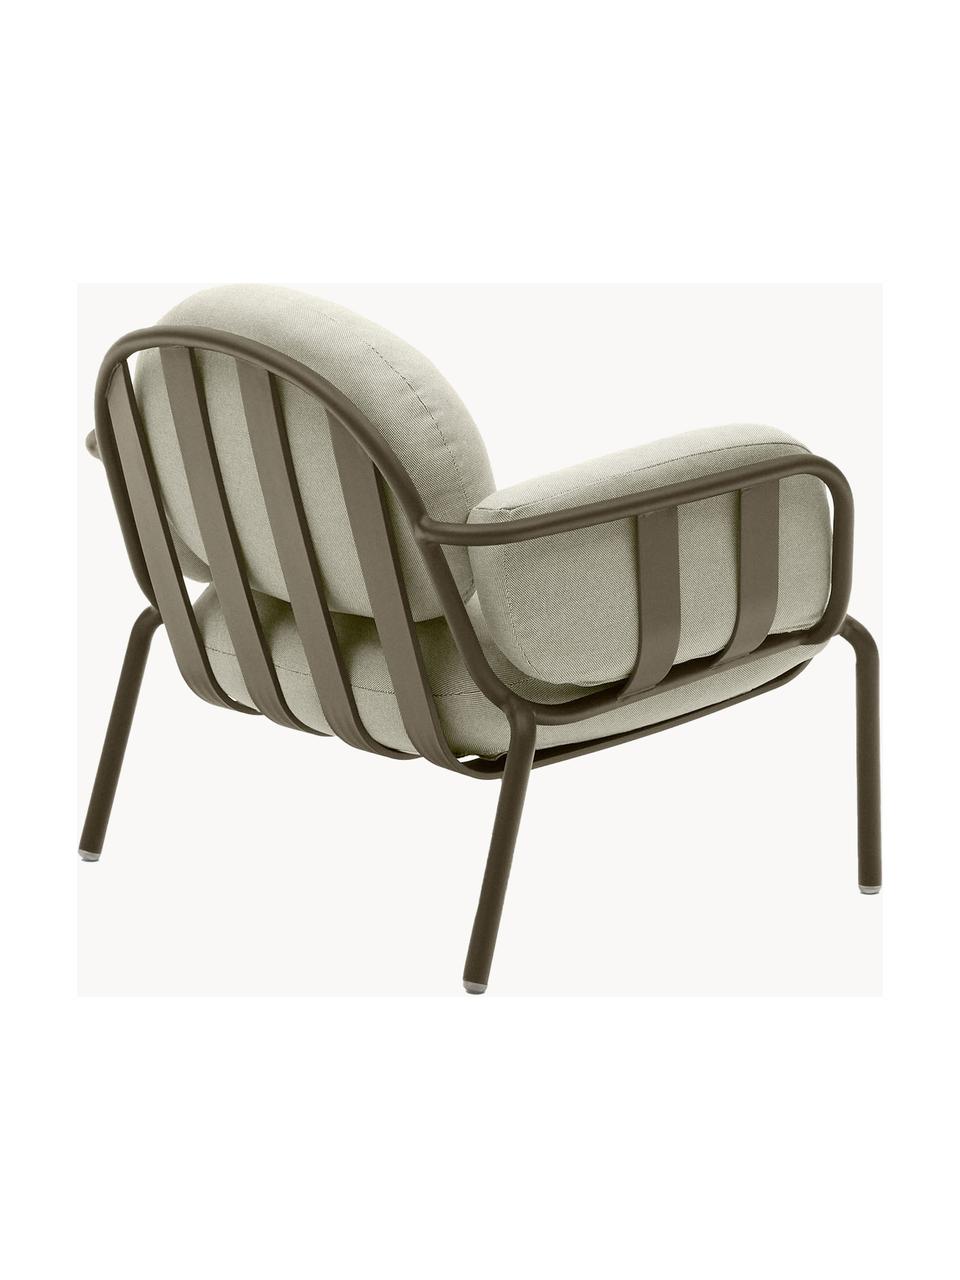 Ogrodowy fotel wypoczynkowy Joncols, Tapicerka: 100% poliester Dzięki tka, Stelaż: aluminium malowane proszk, Jasnobeżowa tkanina, oliwkowy zielony, S 89 x G 80 cm